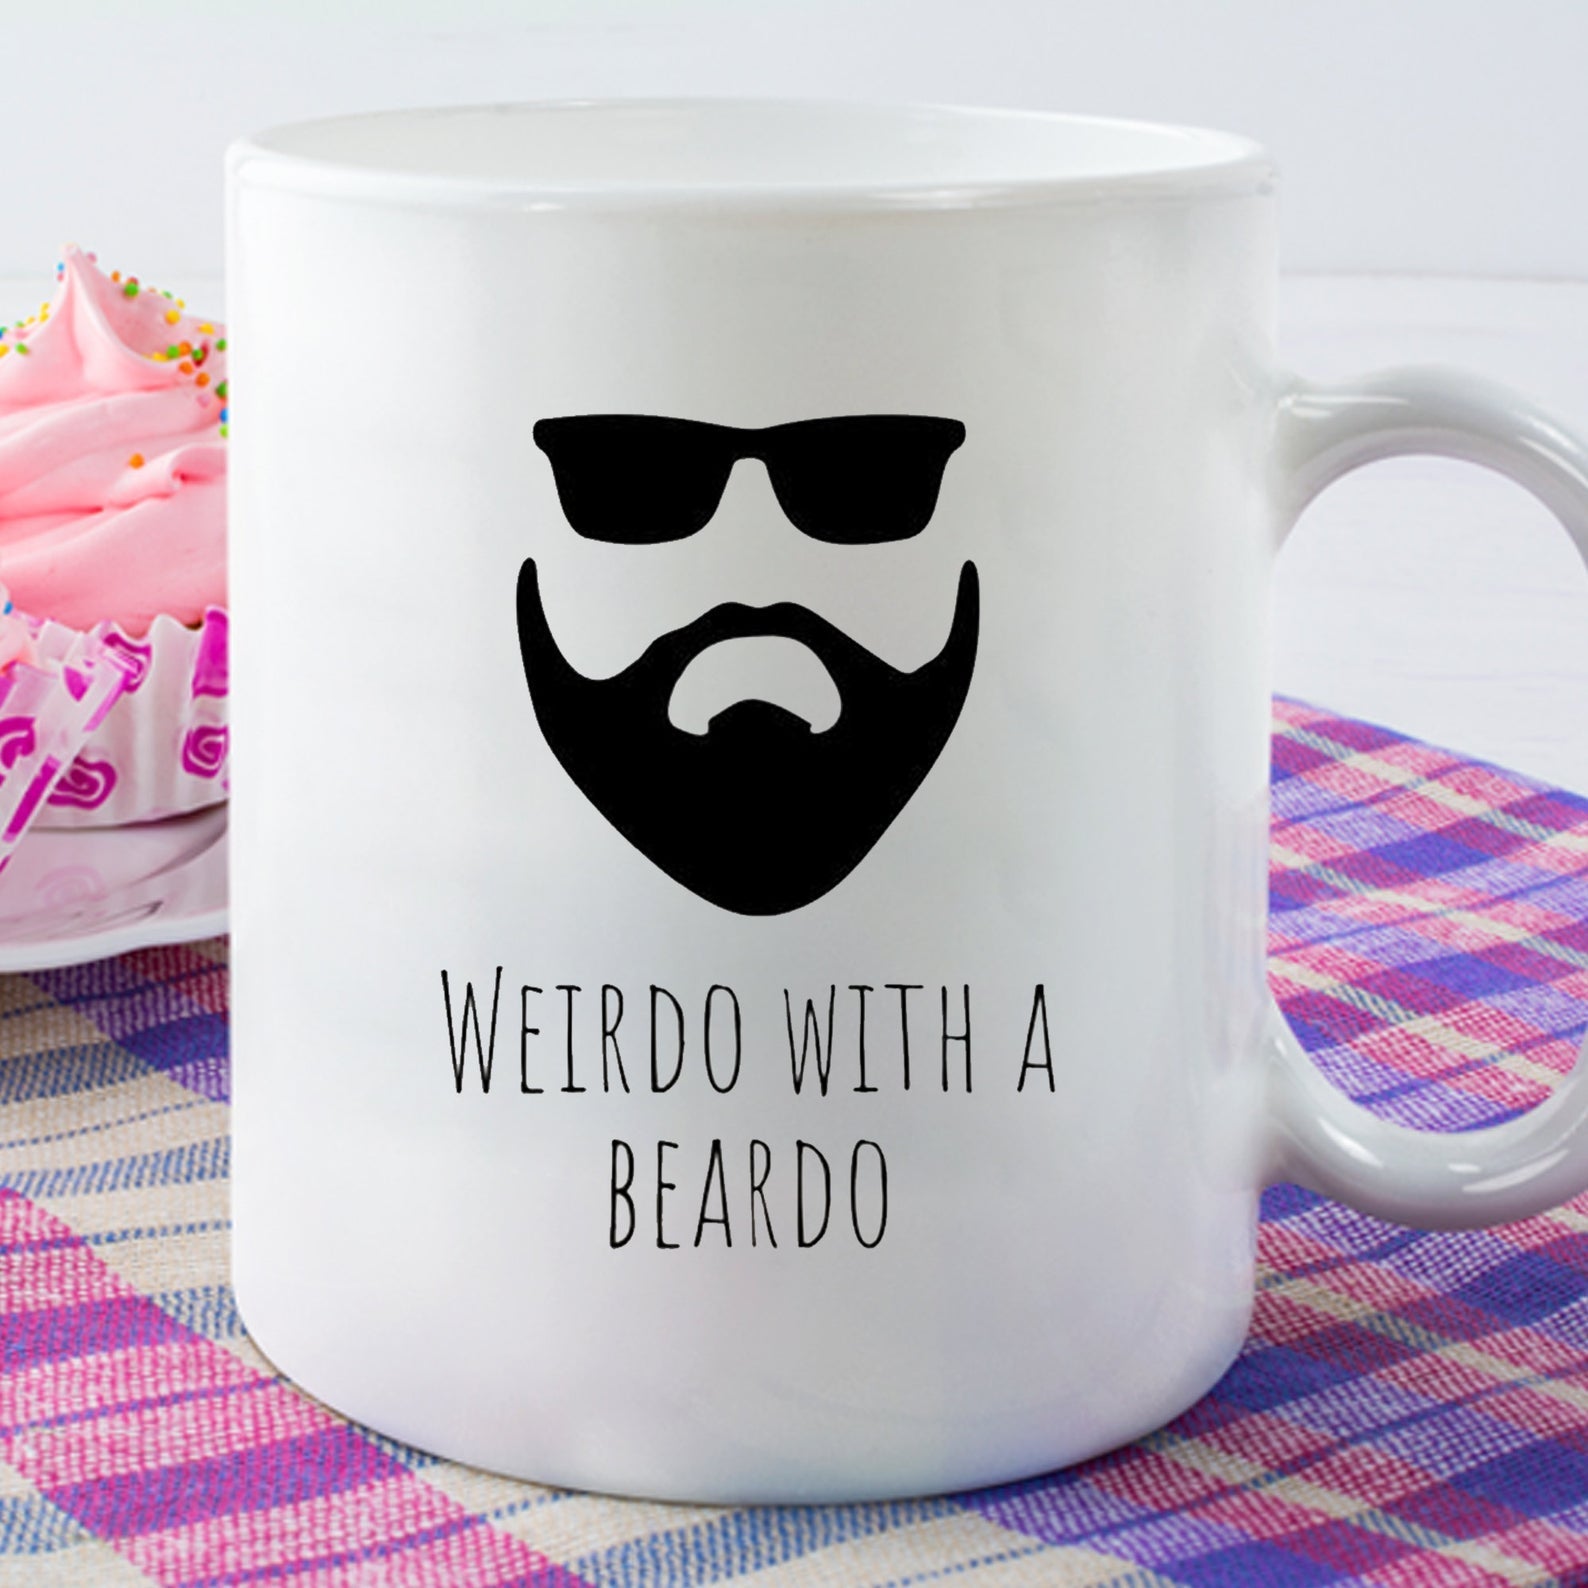 Weirdo With A Beardo Funny Mug White Ceramic 11-15Oz Coffee Tea Cup